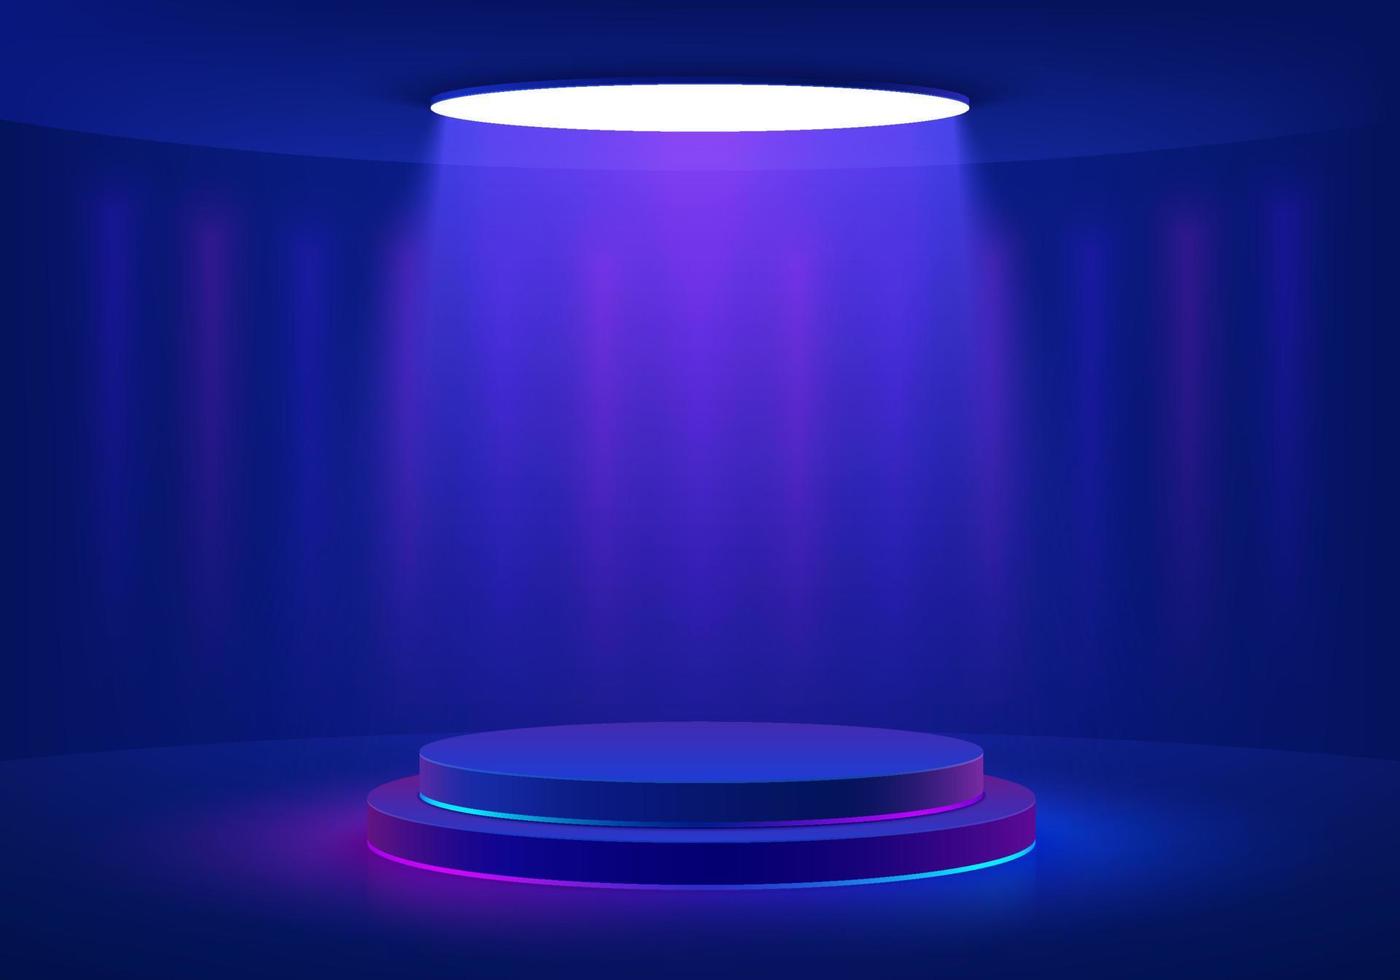 pódio de pedestal de cilindro azul escuro realista com luz de néon de teto redondo brilhante em estilo futurista. cena mínima para produtos de maquete, vitrine de palco, exibição de promoção. quarto 3d abstrato de vetor. vetor